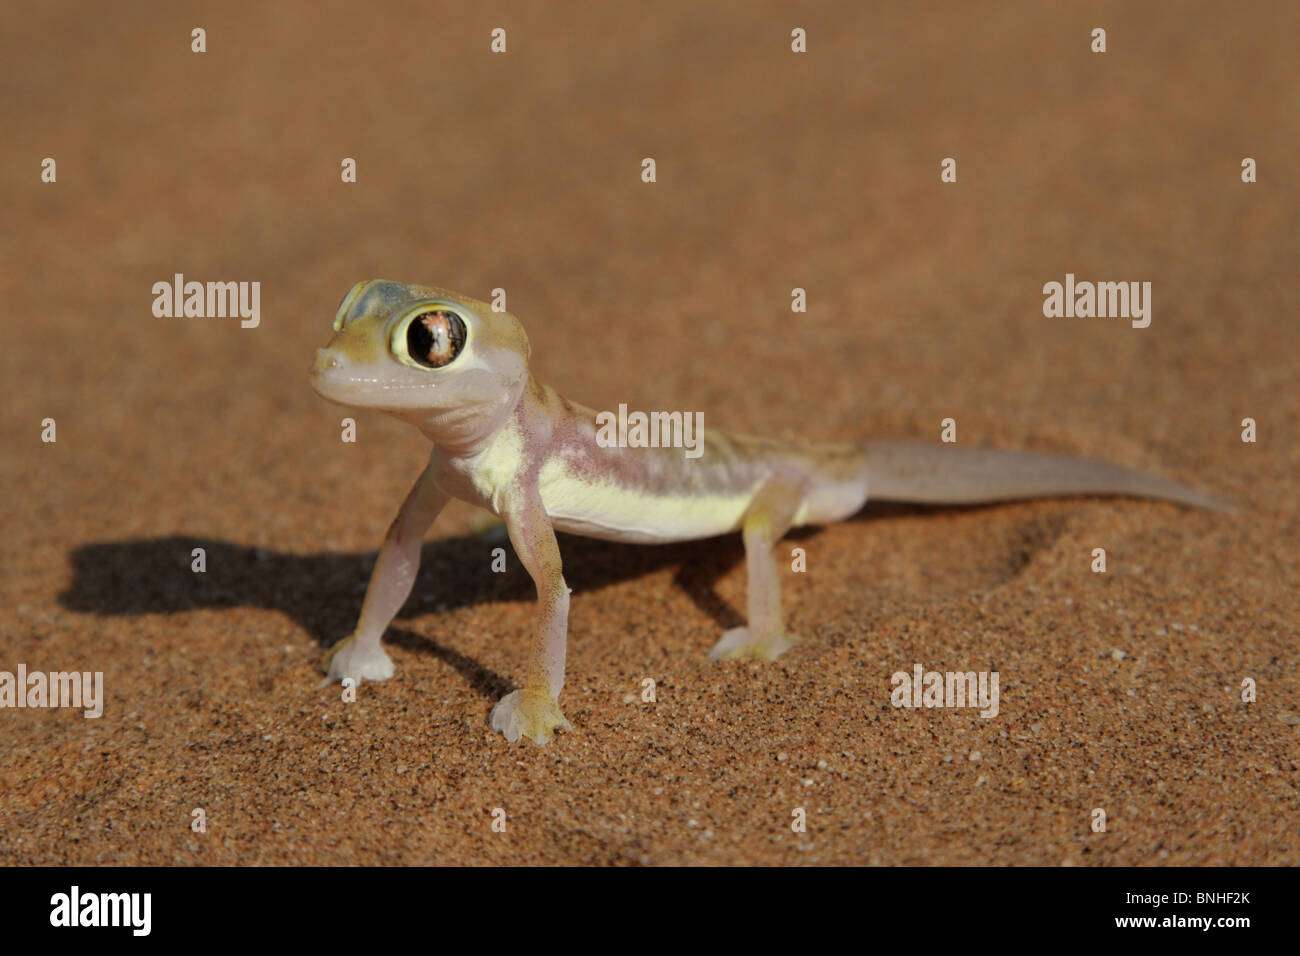 Palmatogecko (Pachydactylus Rangei), auch bekannt als Web-footed Gecko, eine nachtaktive Gecko endemisch in der Namib-Wüste. Stockfoto